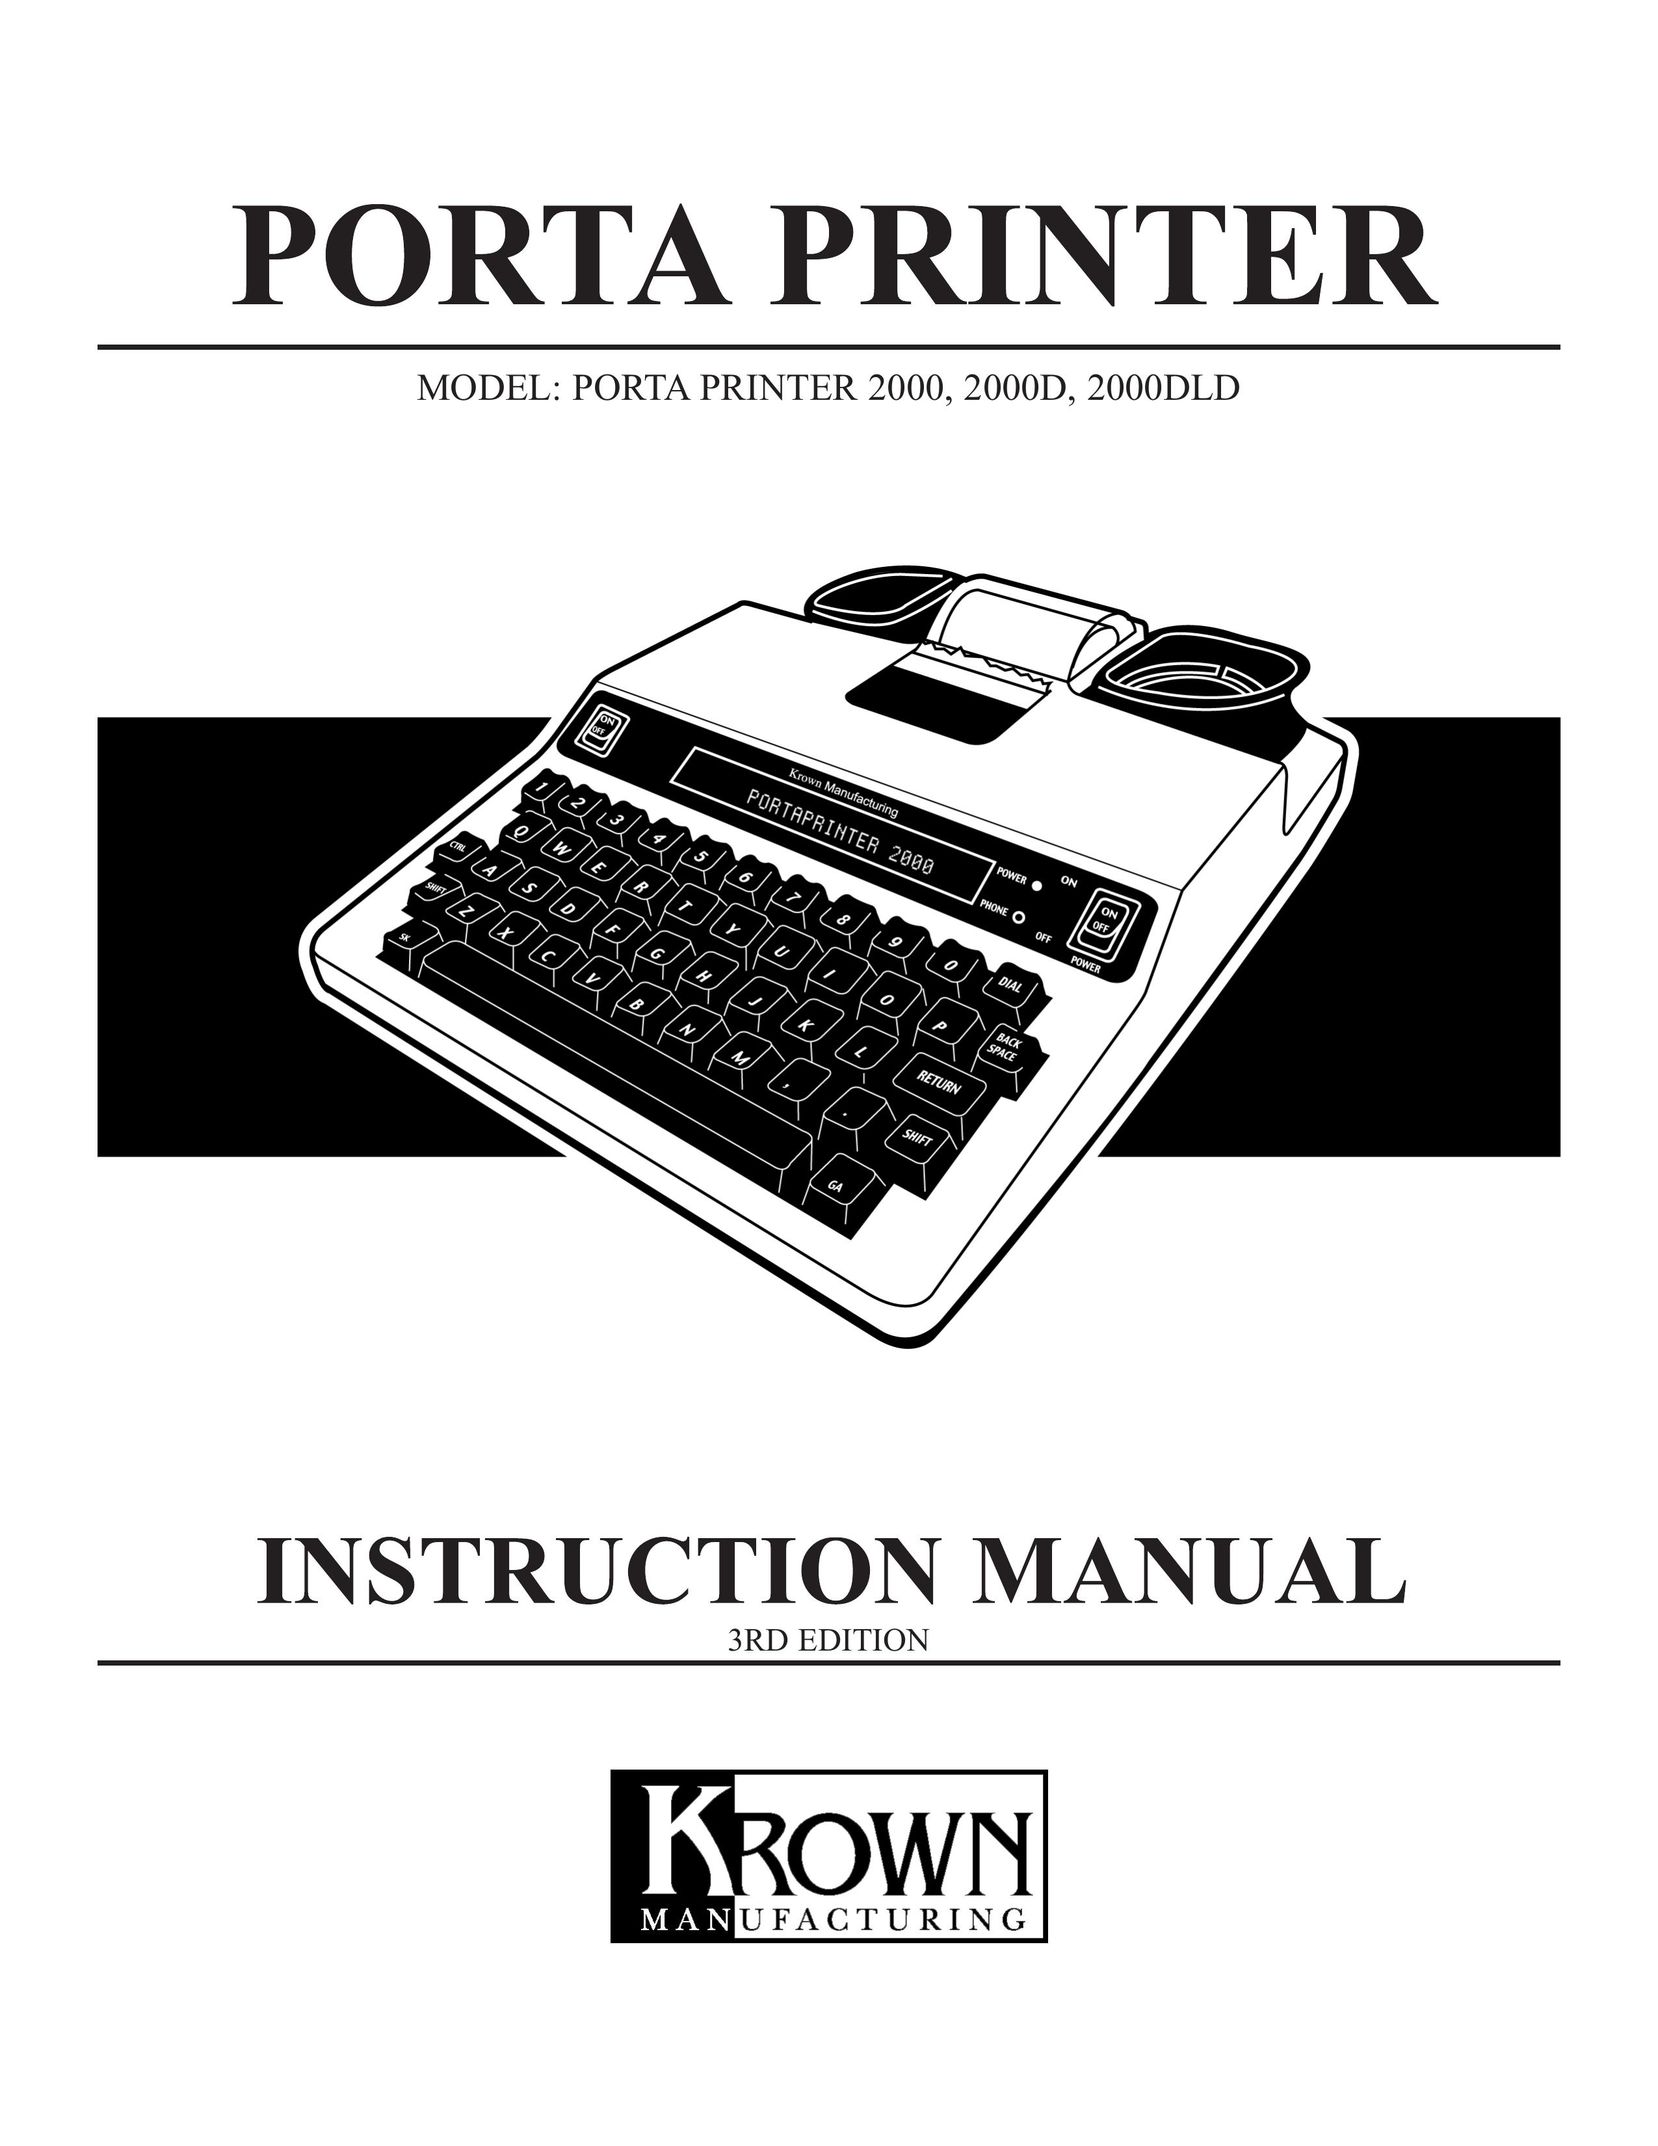 Krown Manufacturing 2000 Printer User Manual